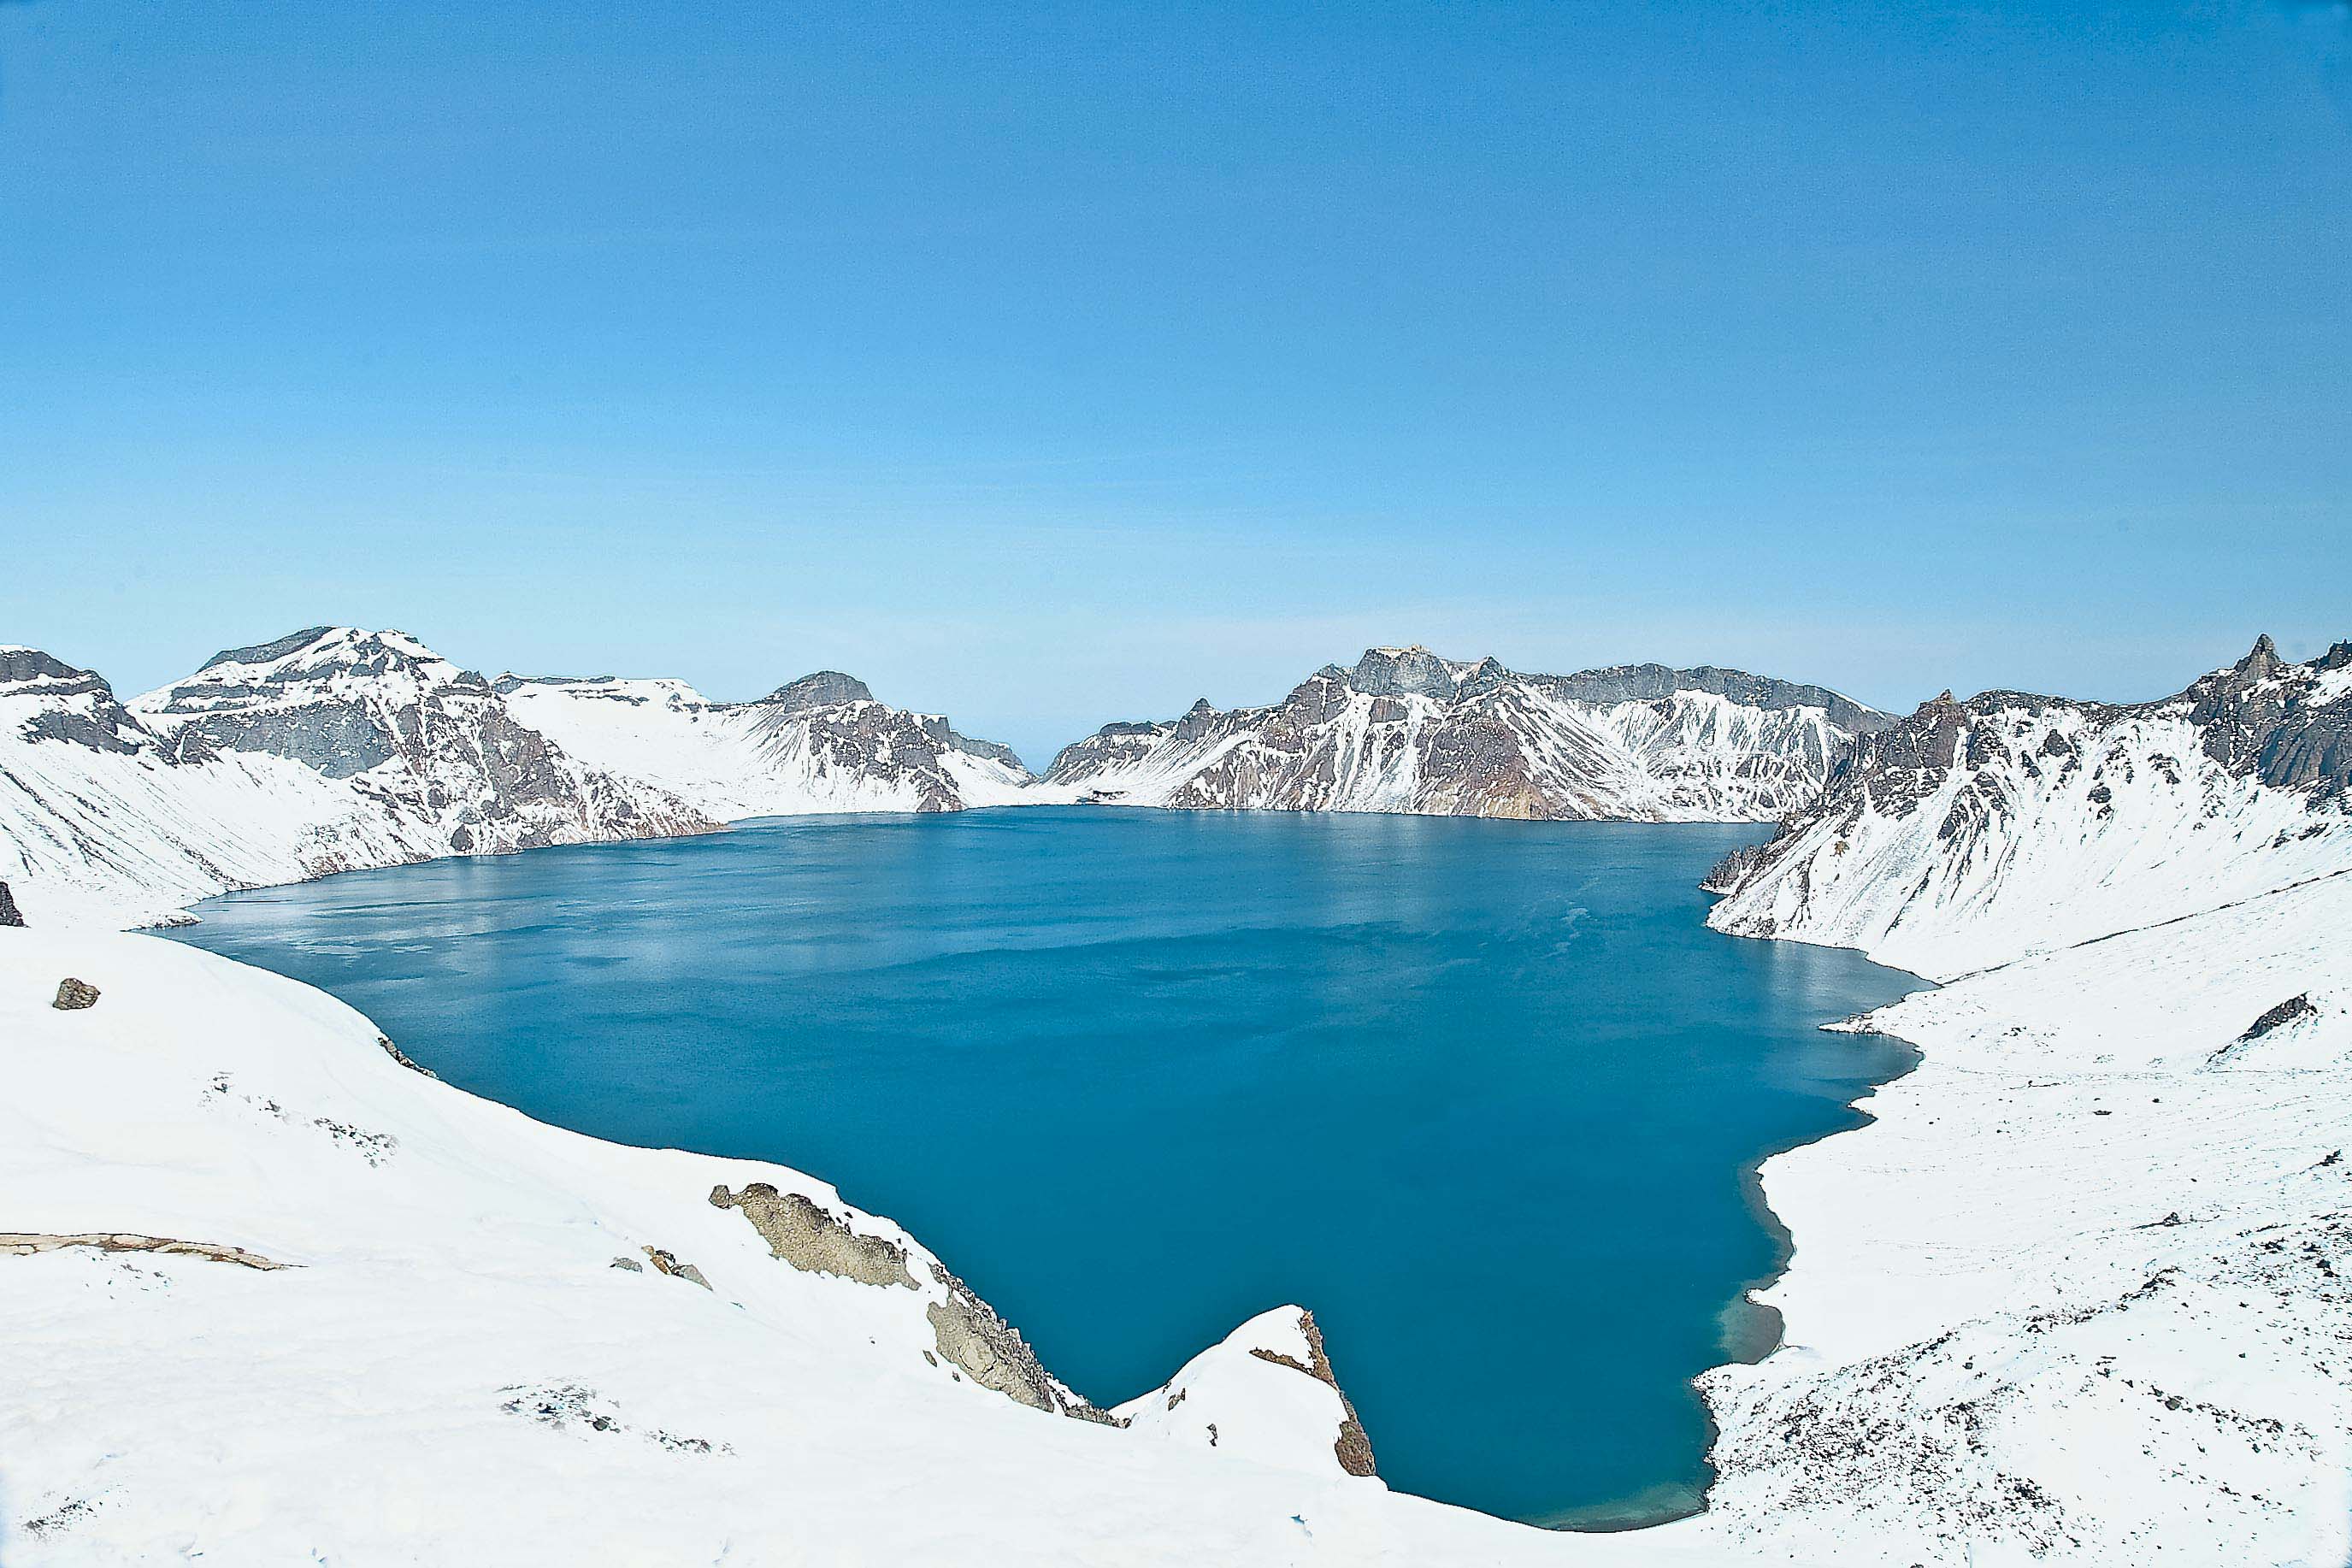 【携程攻略】新疆天山天池景点,景色还可以，虽然不如喀纳斯大气，但是湖水、雪山、松林、古庙搭配的…